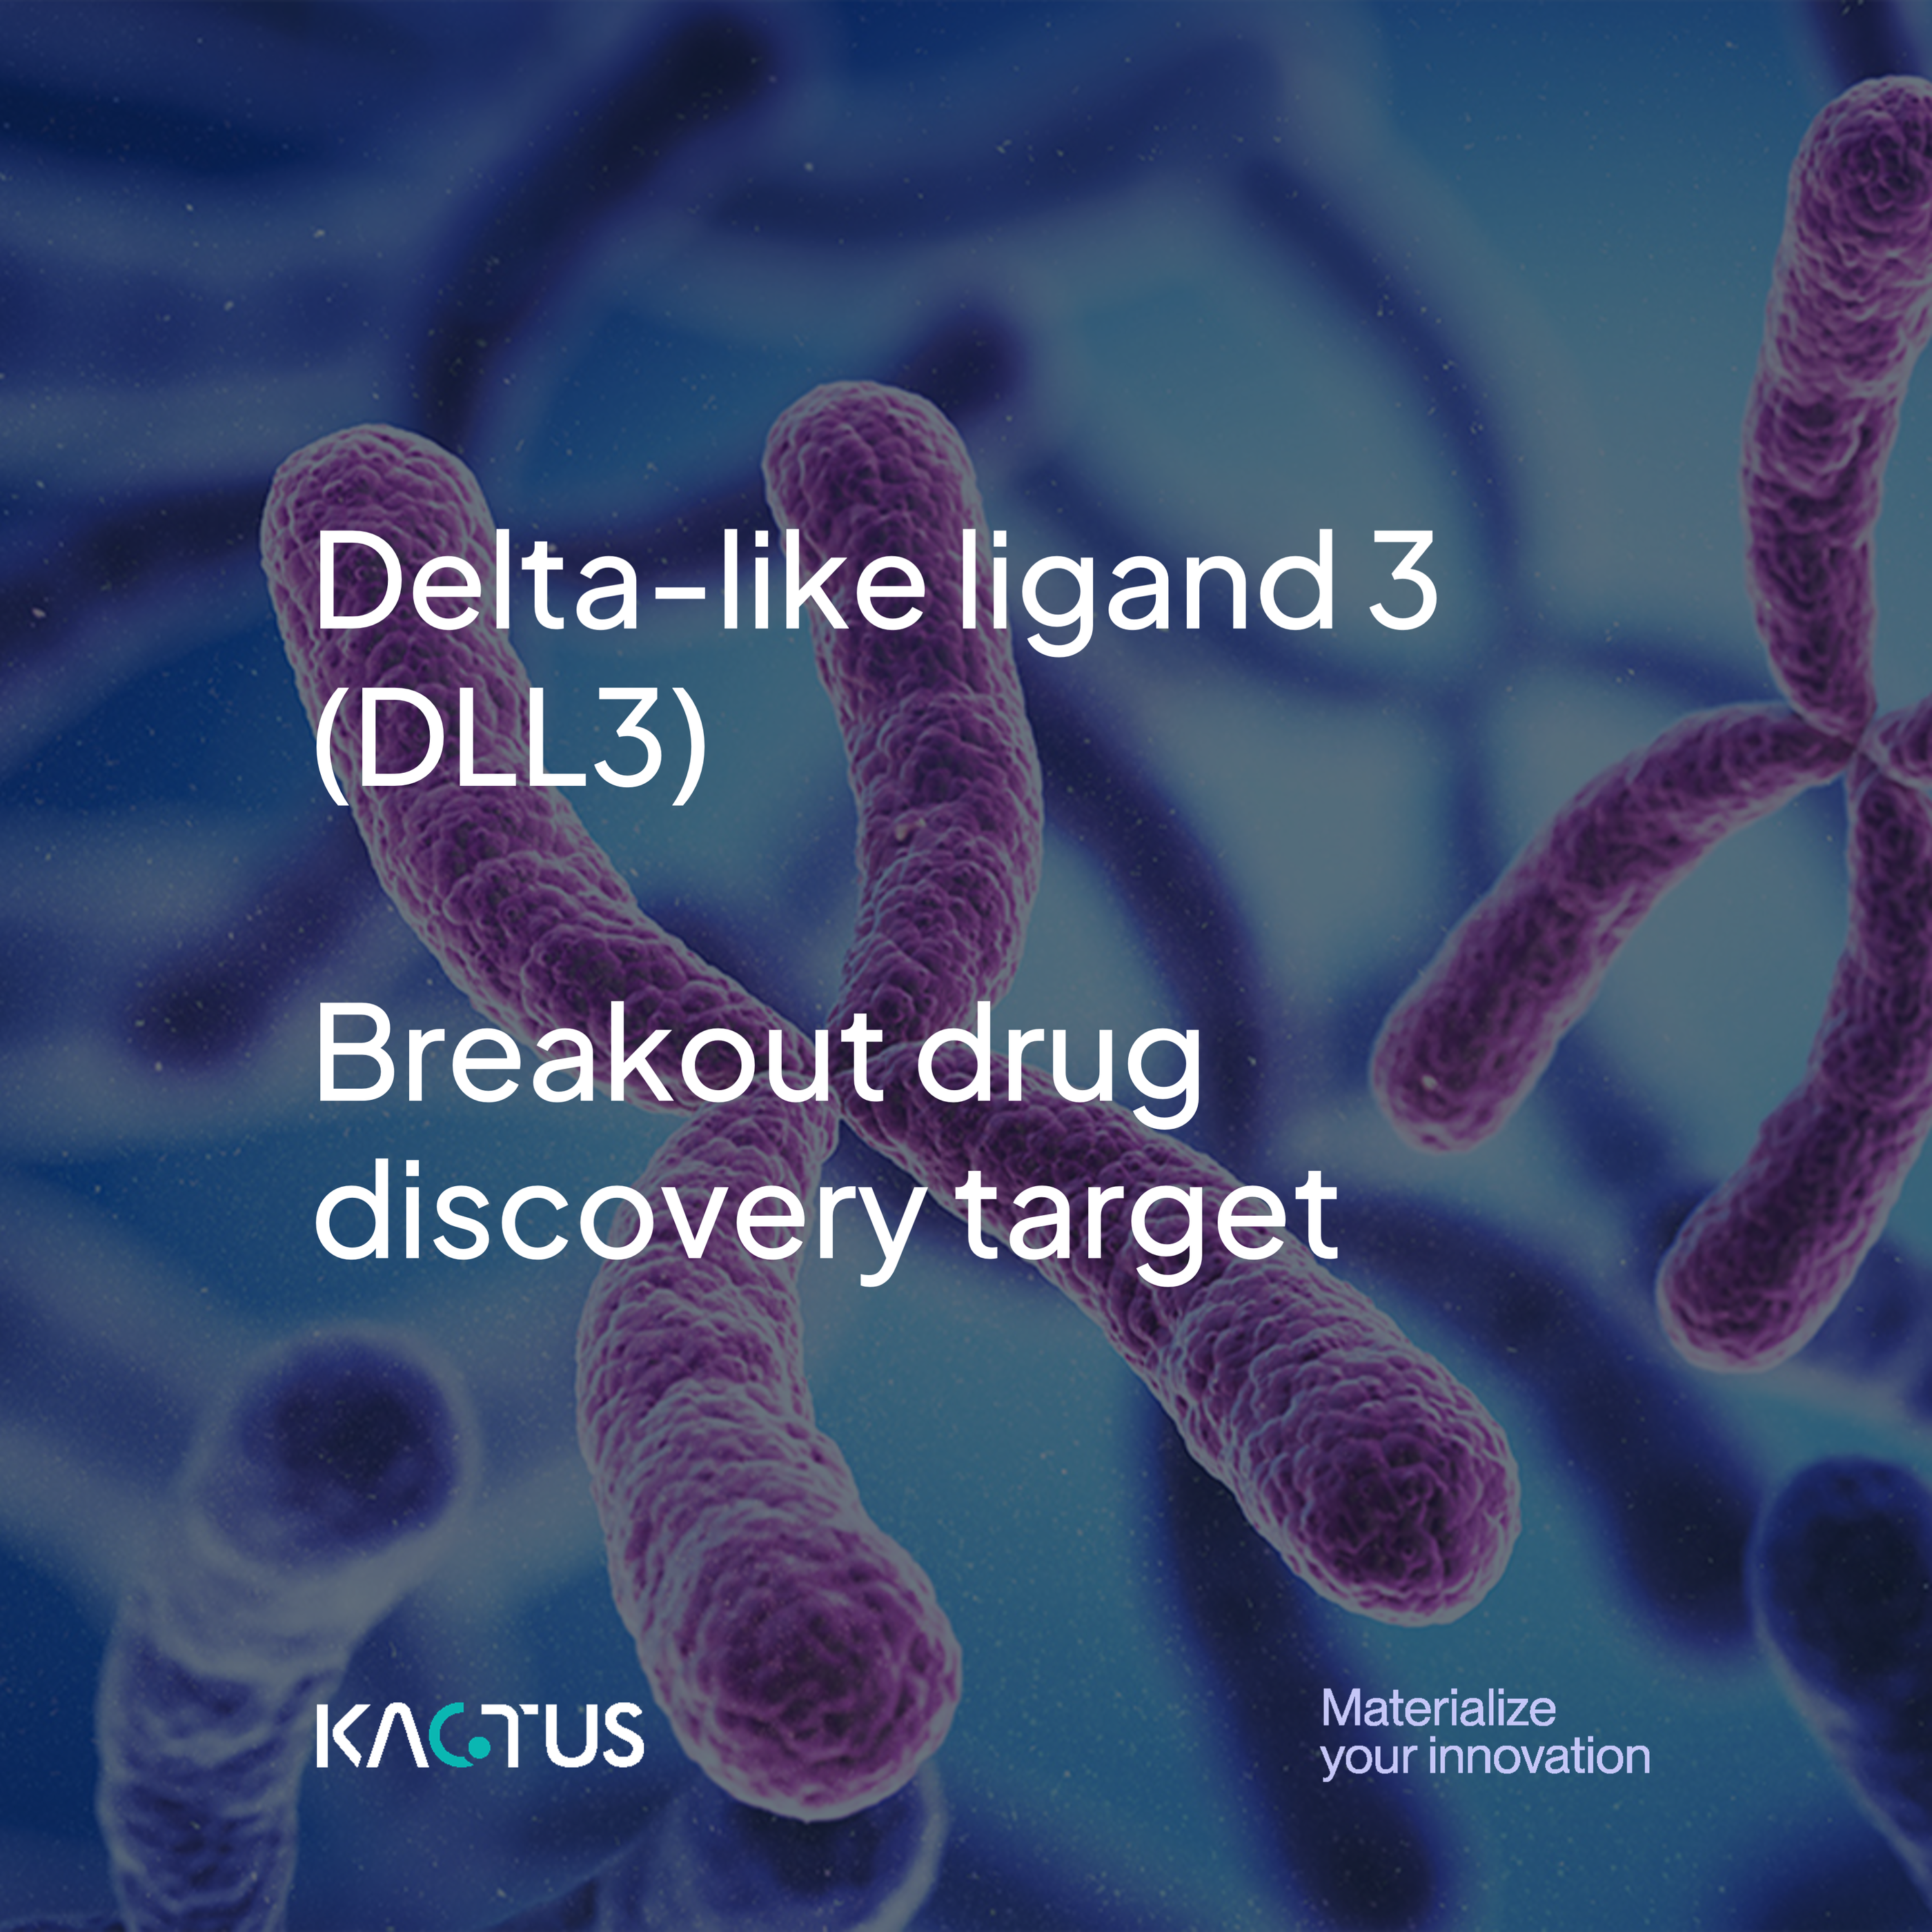 Breakout Tumor Target: DLL3